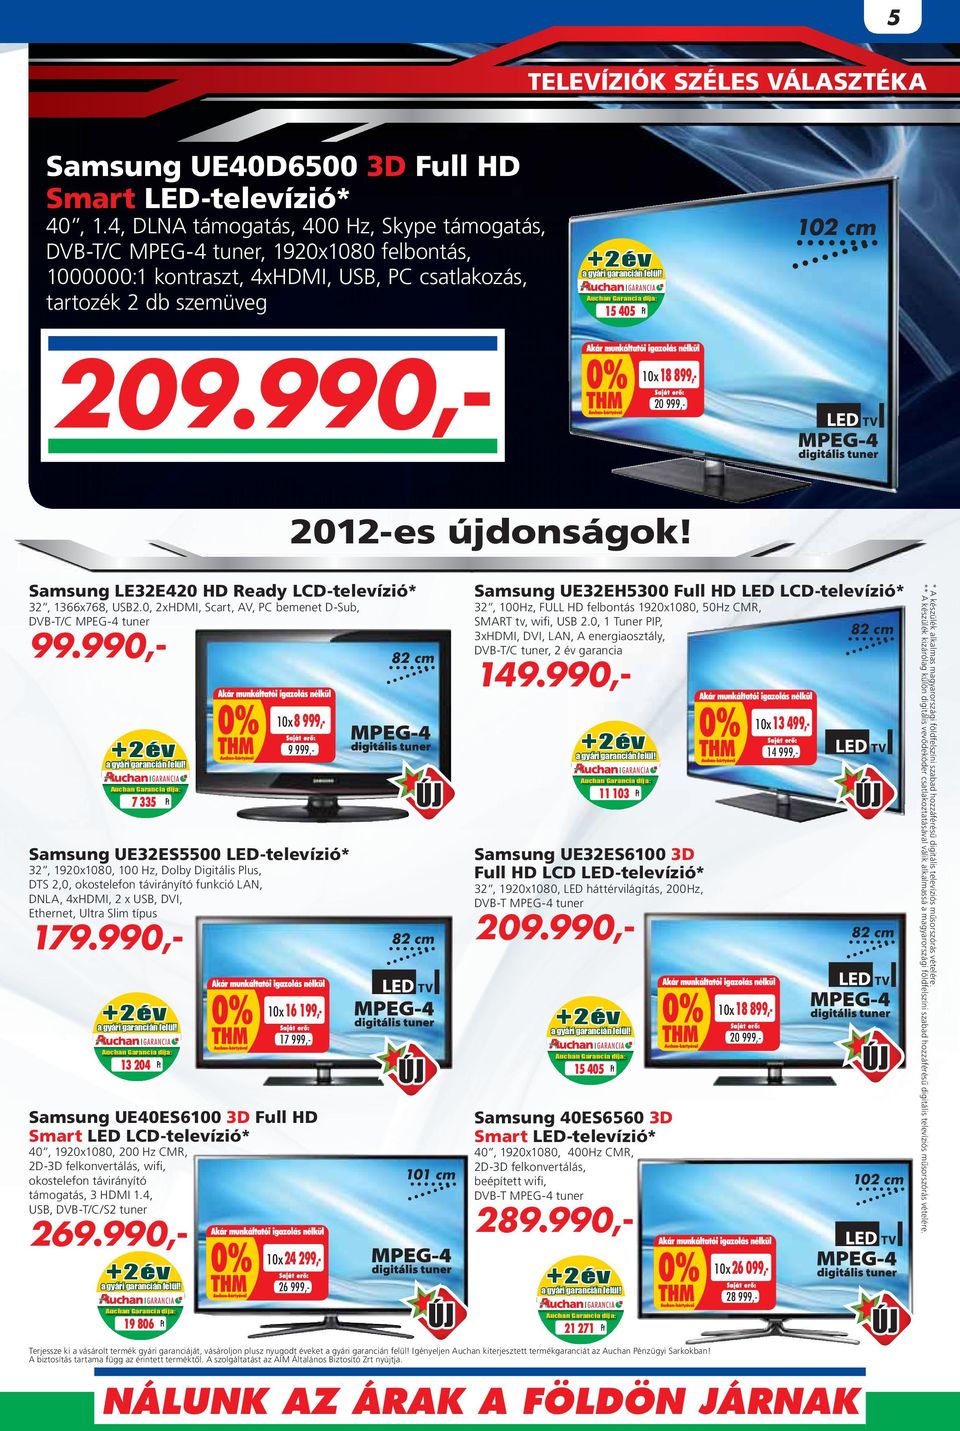 990,- 10x 18 899,20 999,- 2012-es 2012 es újdonságok! újjdonságok! Samsung UE32EH5300 Full HD LED LCD-televízió* 32, 1366x768, USB2.